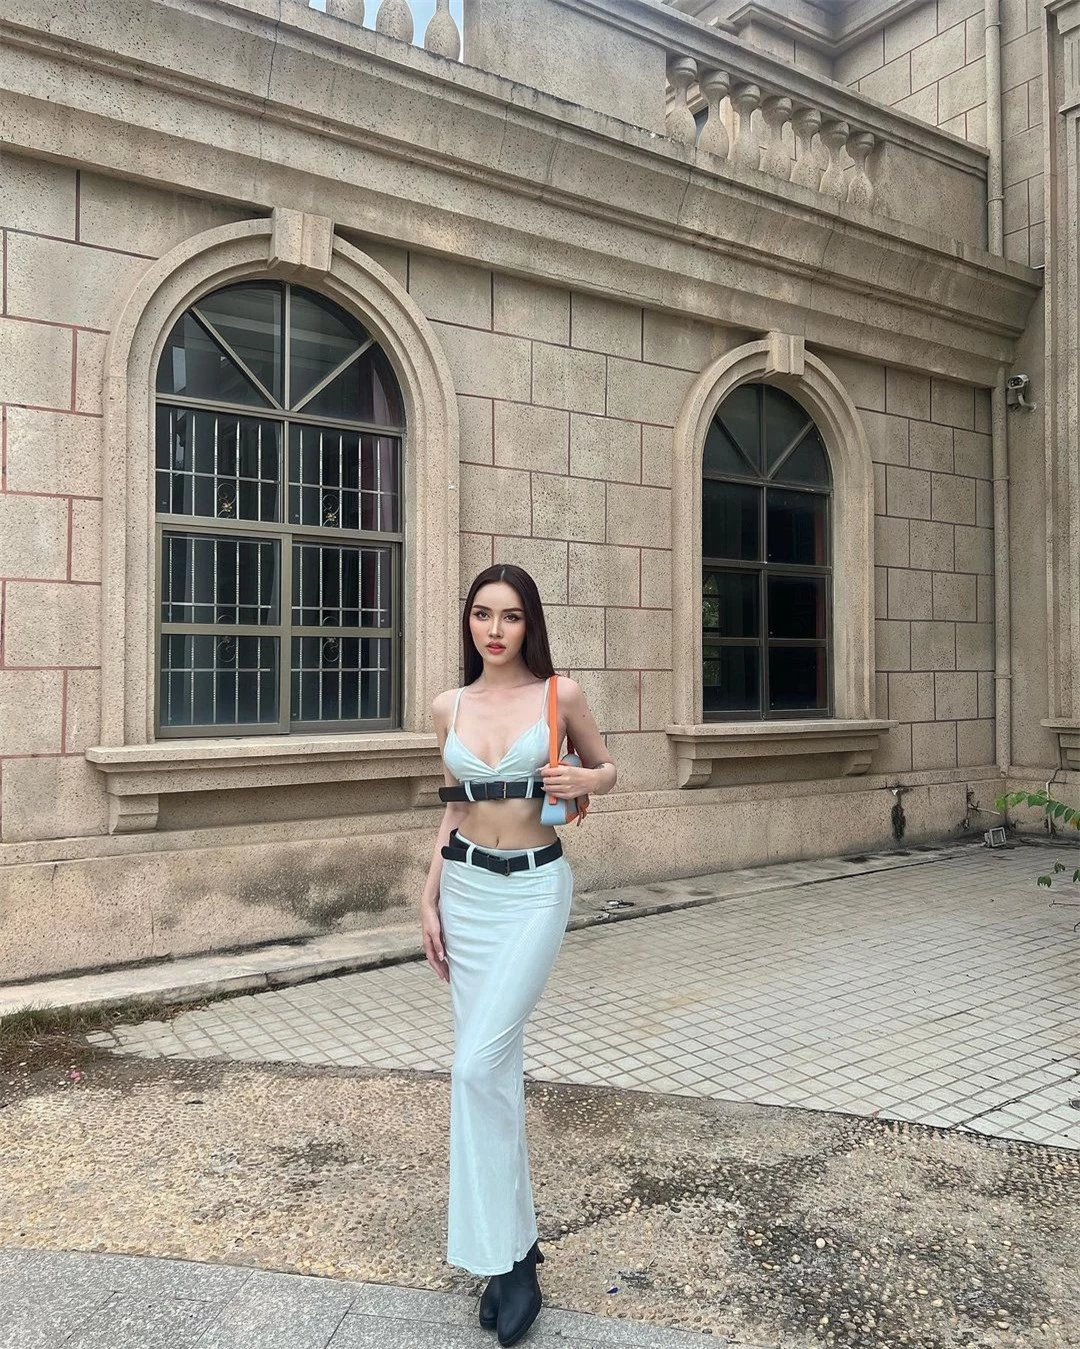 Nhan sắc người đẹp chuyển giới giành ngôi Á hậu Hoàn vũ Campuchia ảnh 14